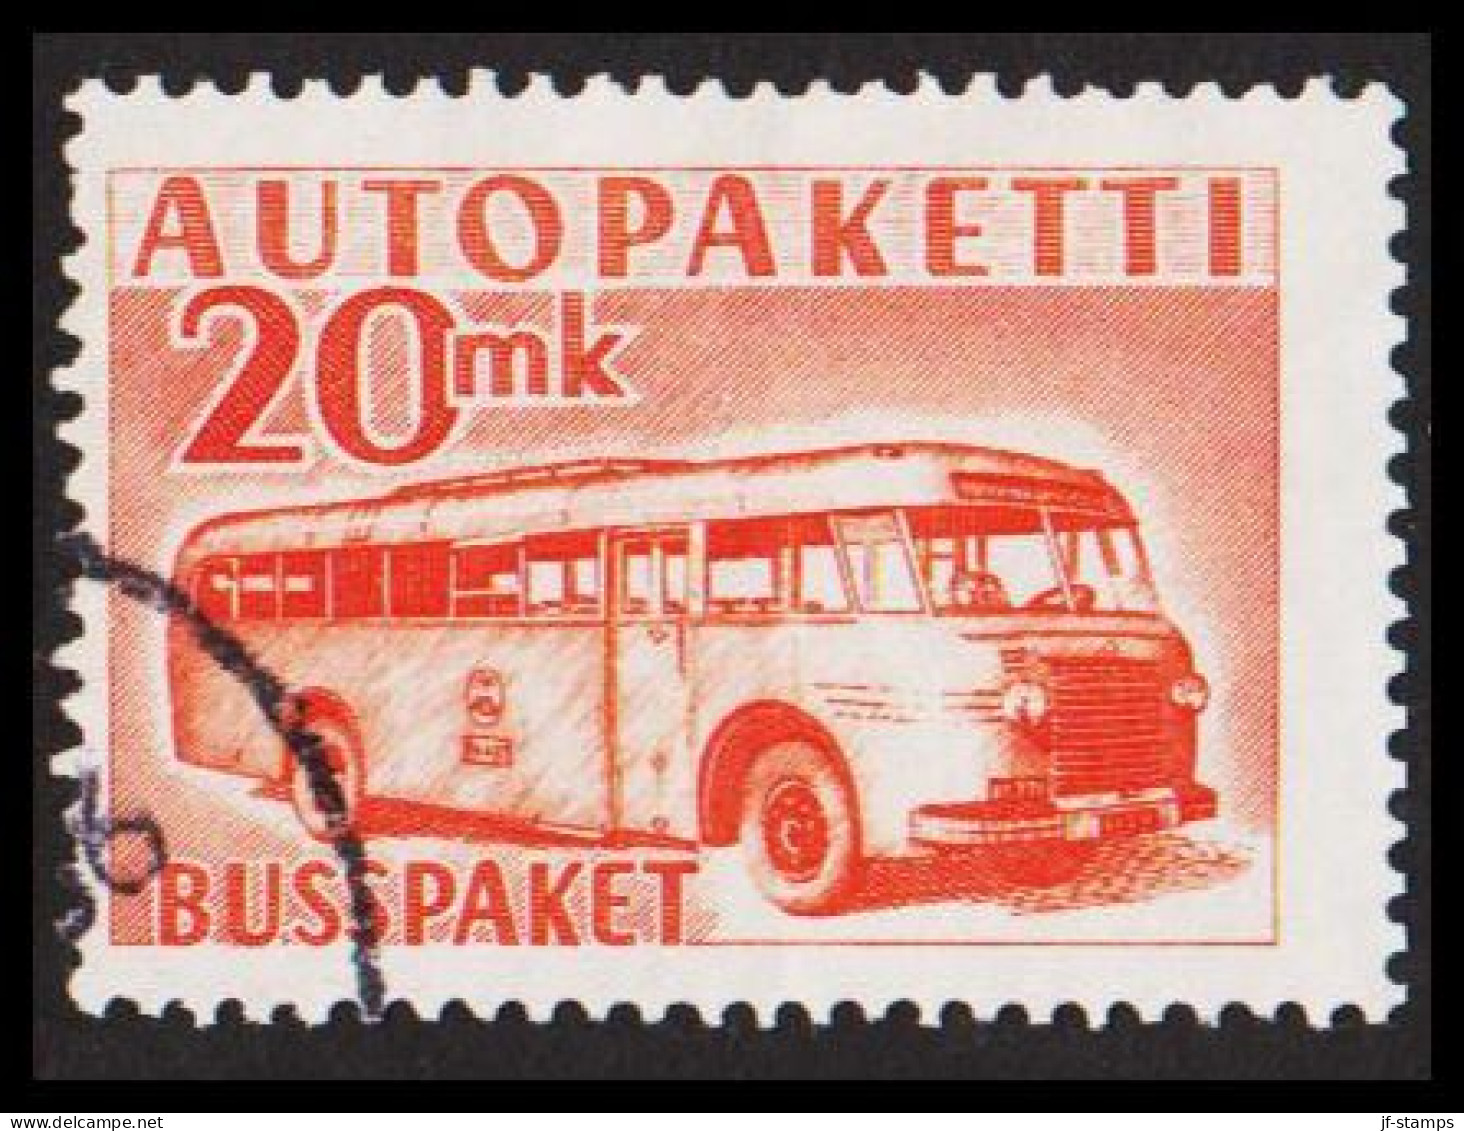 1952-1958. FINLAND. Mail Bus. 20 Mk. AUTOPAKETTI - BUSSPAKET  (Michel AP 7) - JF534381 - Bus Parcels / Colis Par Autobus / Pakjes Per Postbus